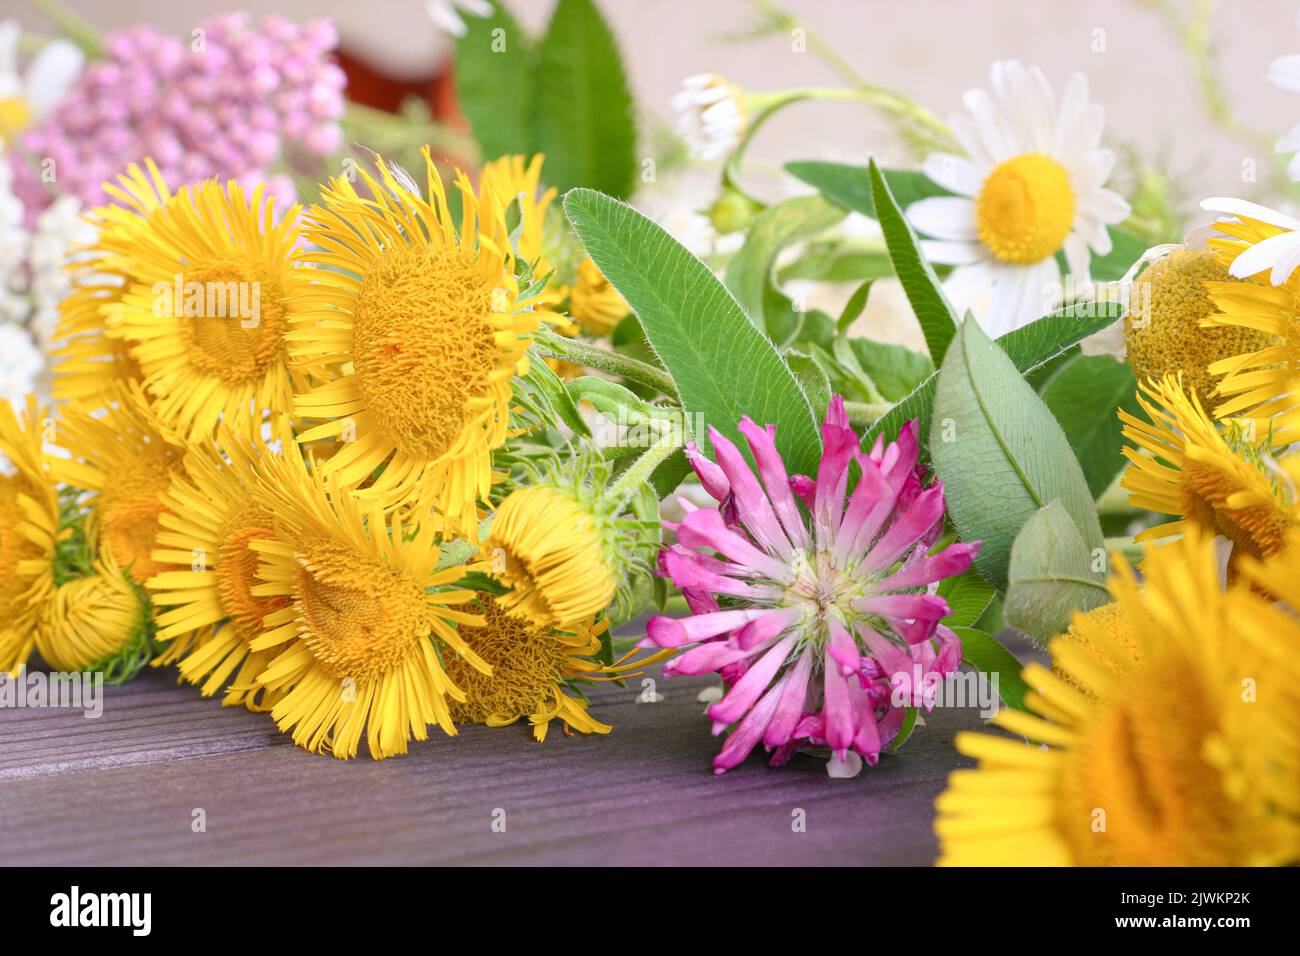 Sfondo floreale festivo, un bouquet di fiori gialli campo, chiodo di garofano, margherite. Foto Stock